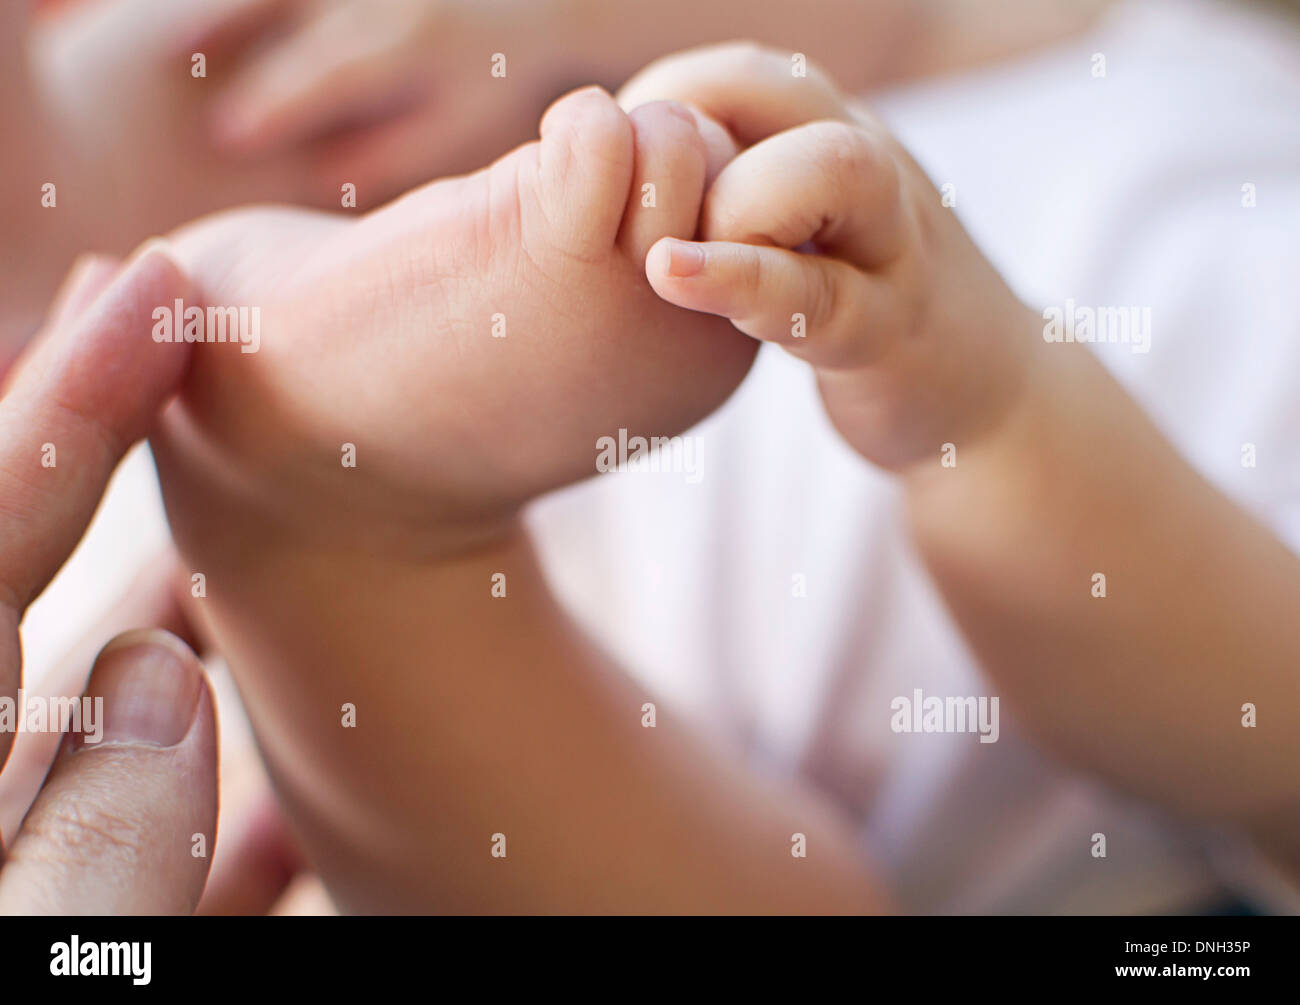 Baby Foot in Hands Stock Photo